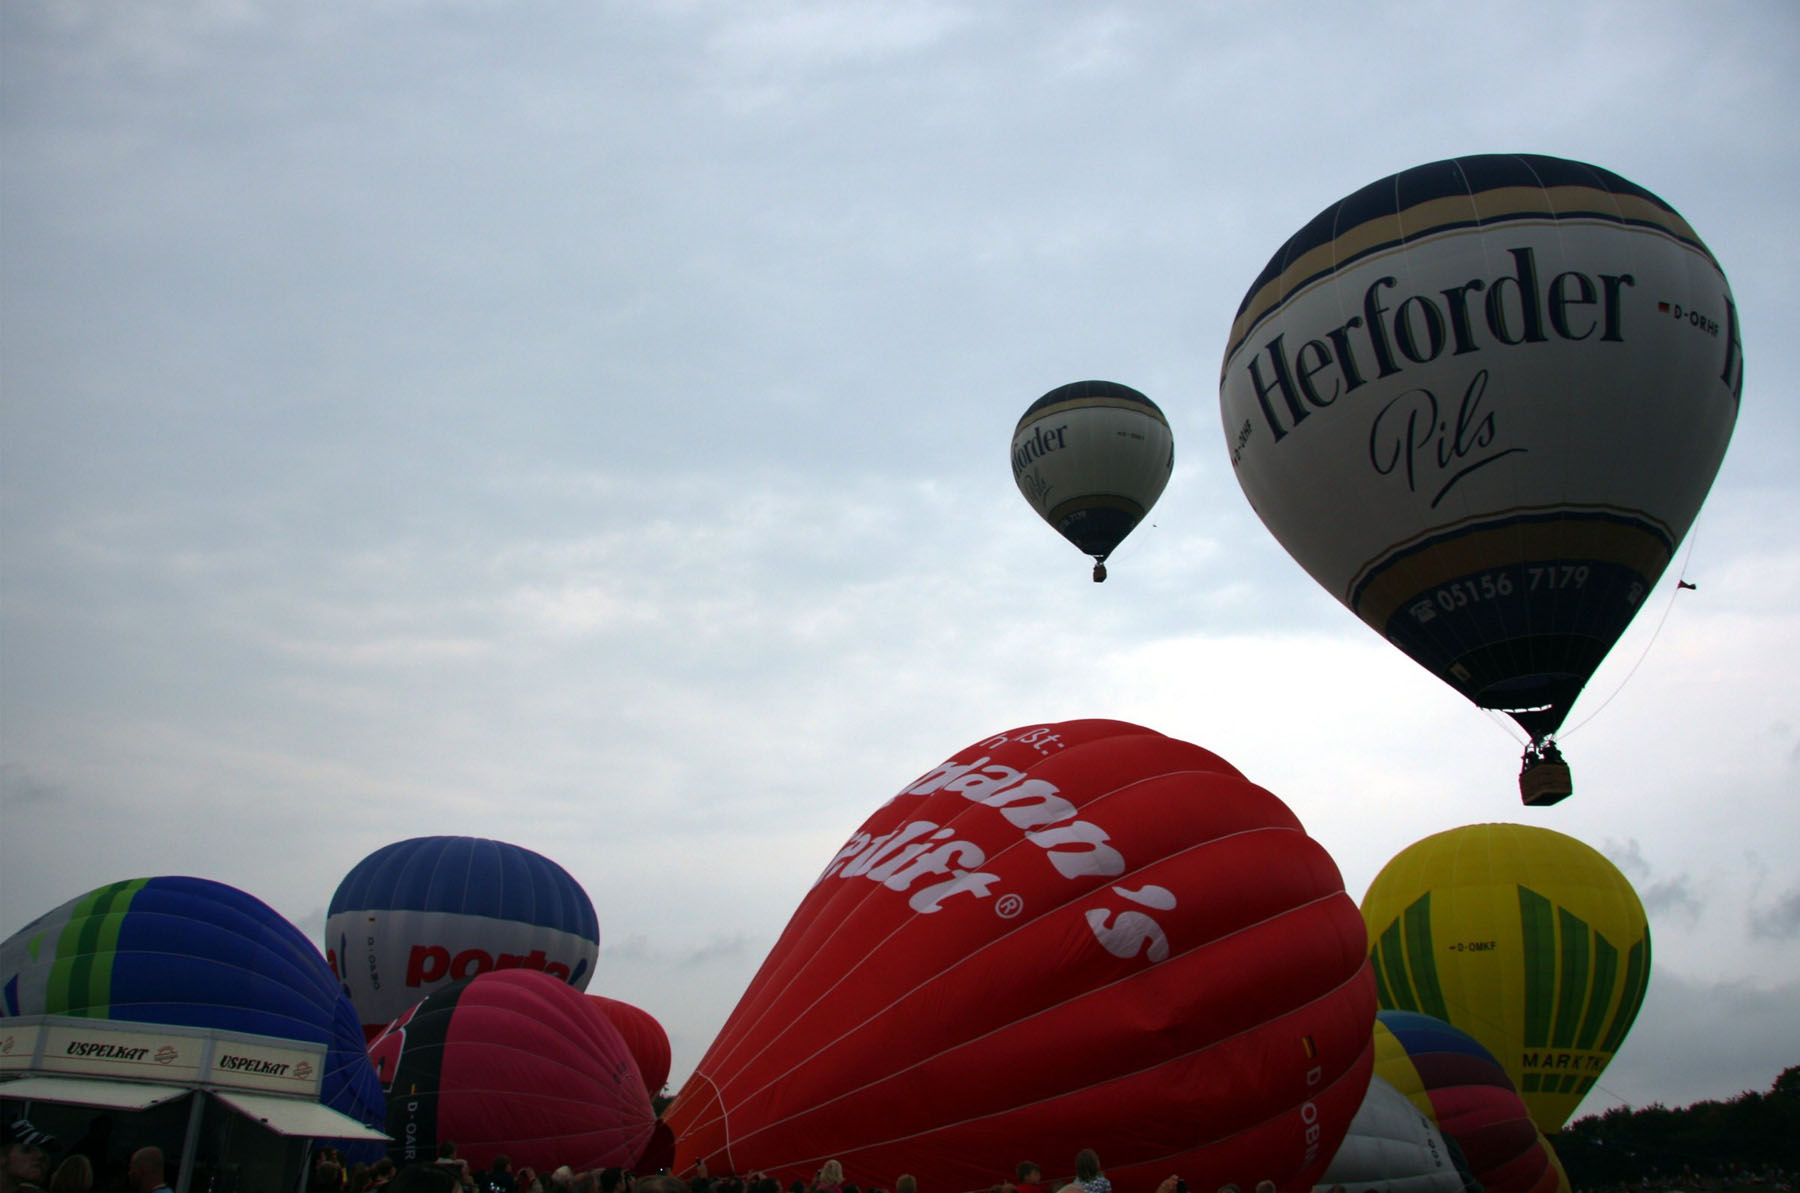 Impressionen von der Ballon-Fiesta
